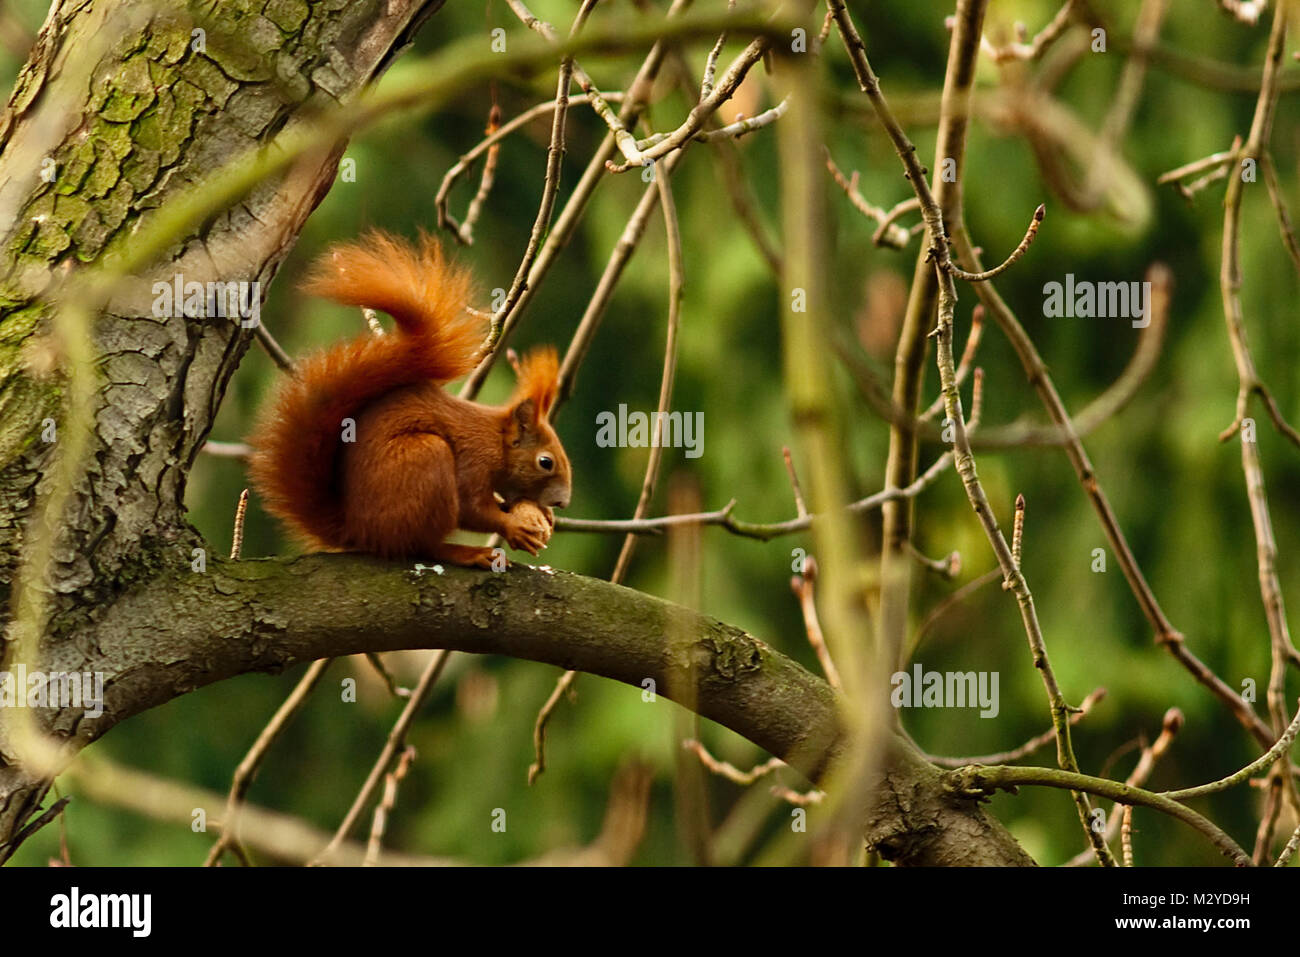 Eichhörnchen (Sciurus vulgaris) beim fressen einer Nuss Stock Photo